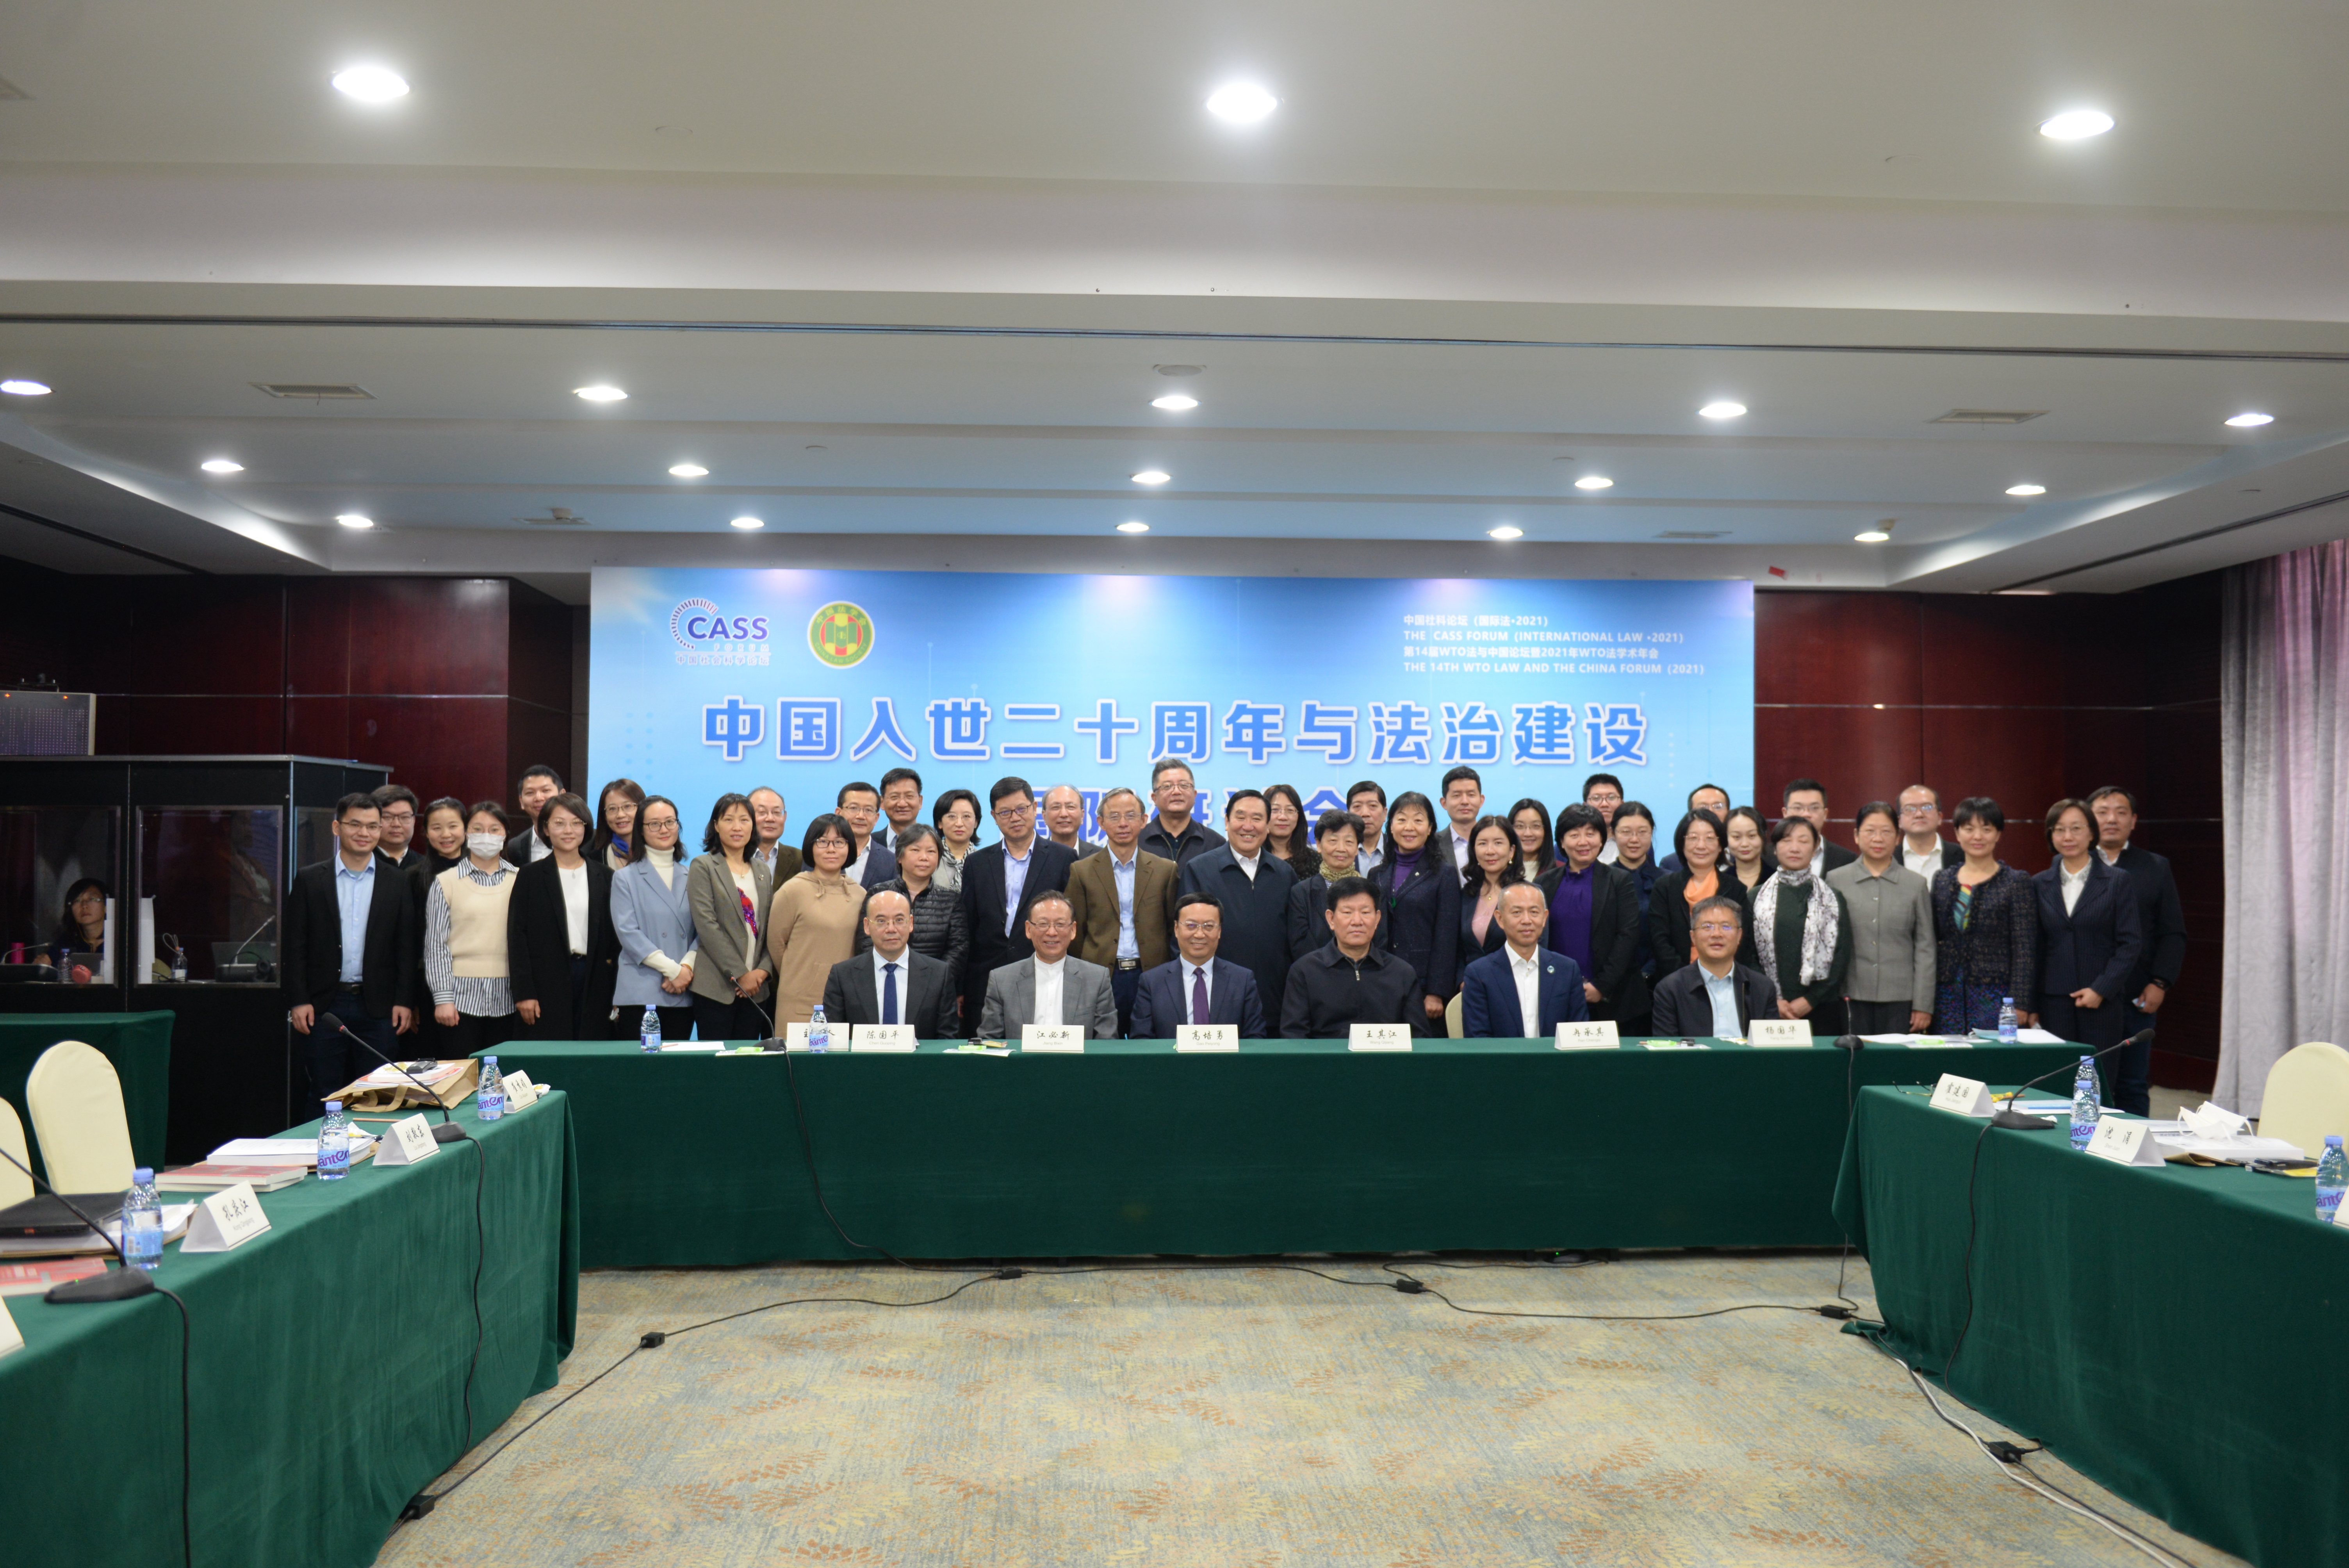 中国入世二十周年与法治建设国际研讨会在京召开